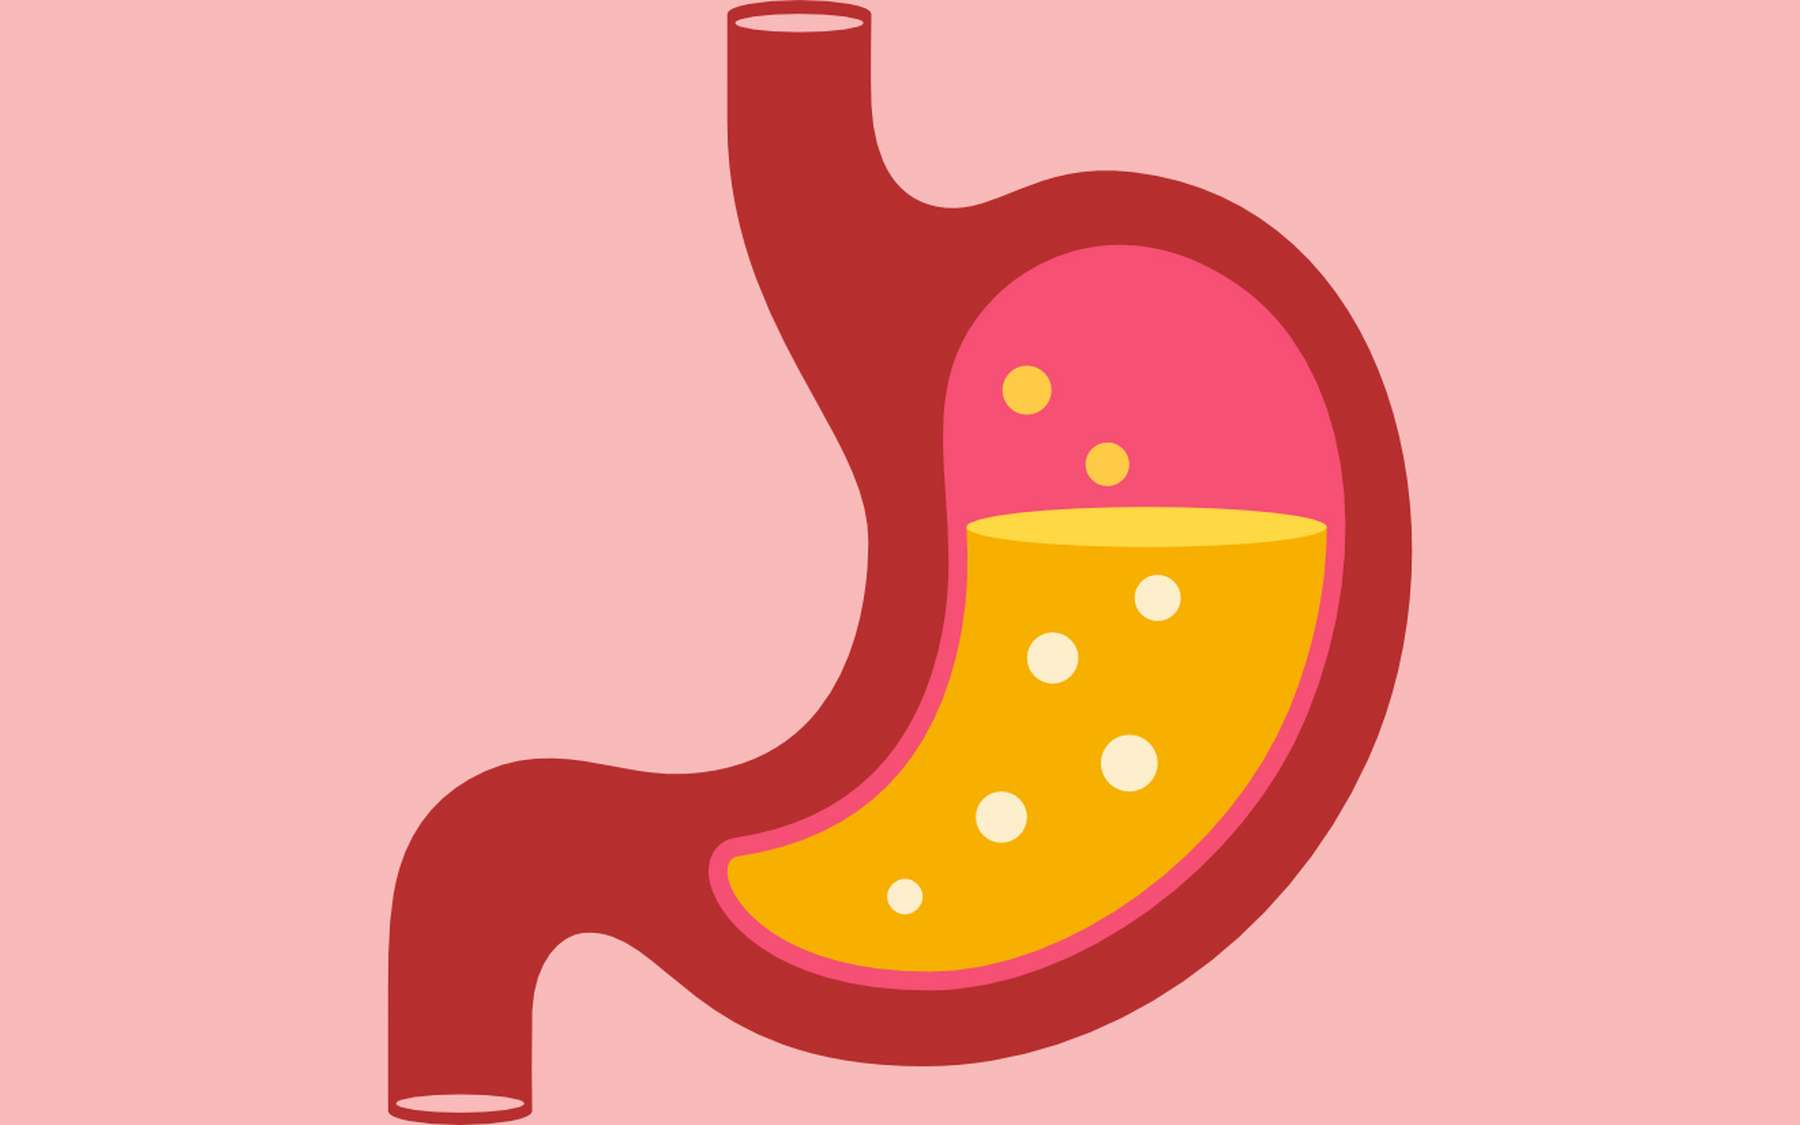 Le suc gastrique est un fluide acide produit par l’estomac qui sert à digérer les aliments. © Arcady, Adobe Stock